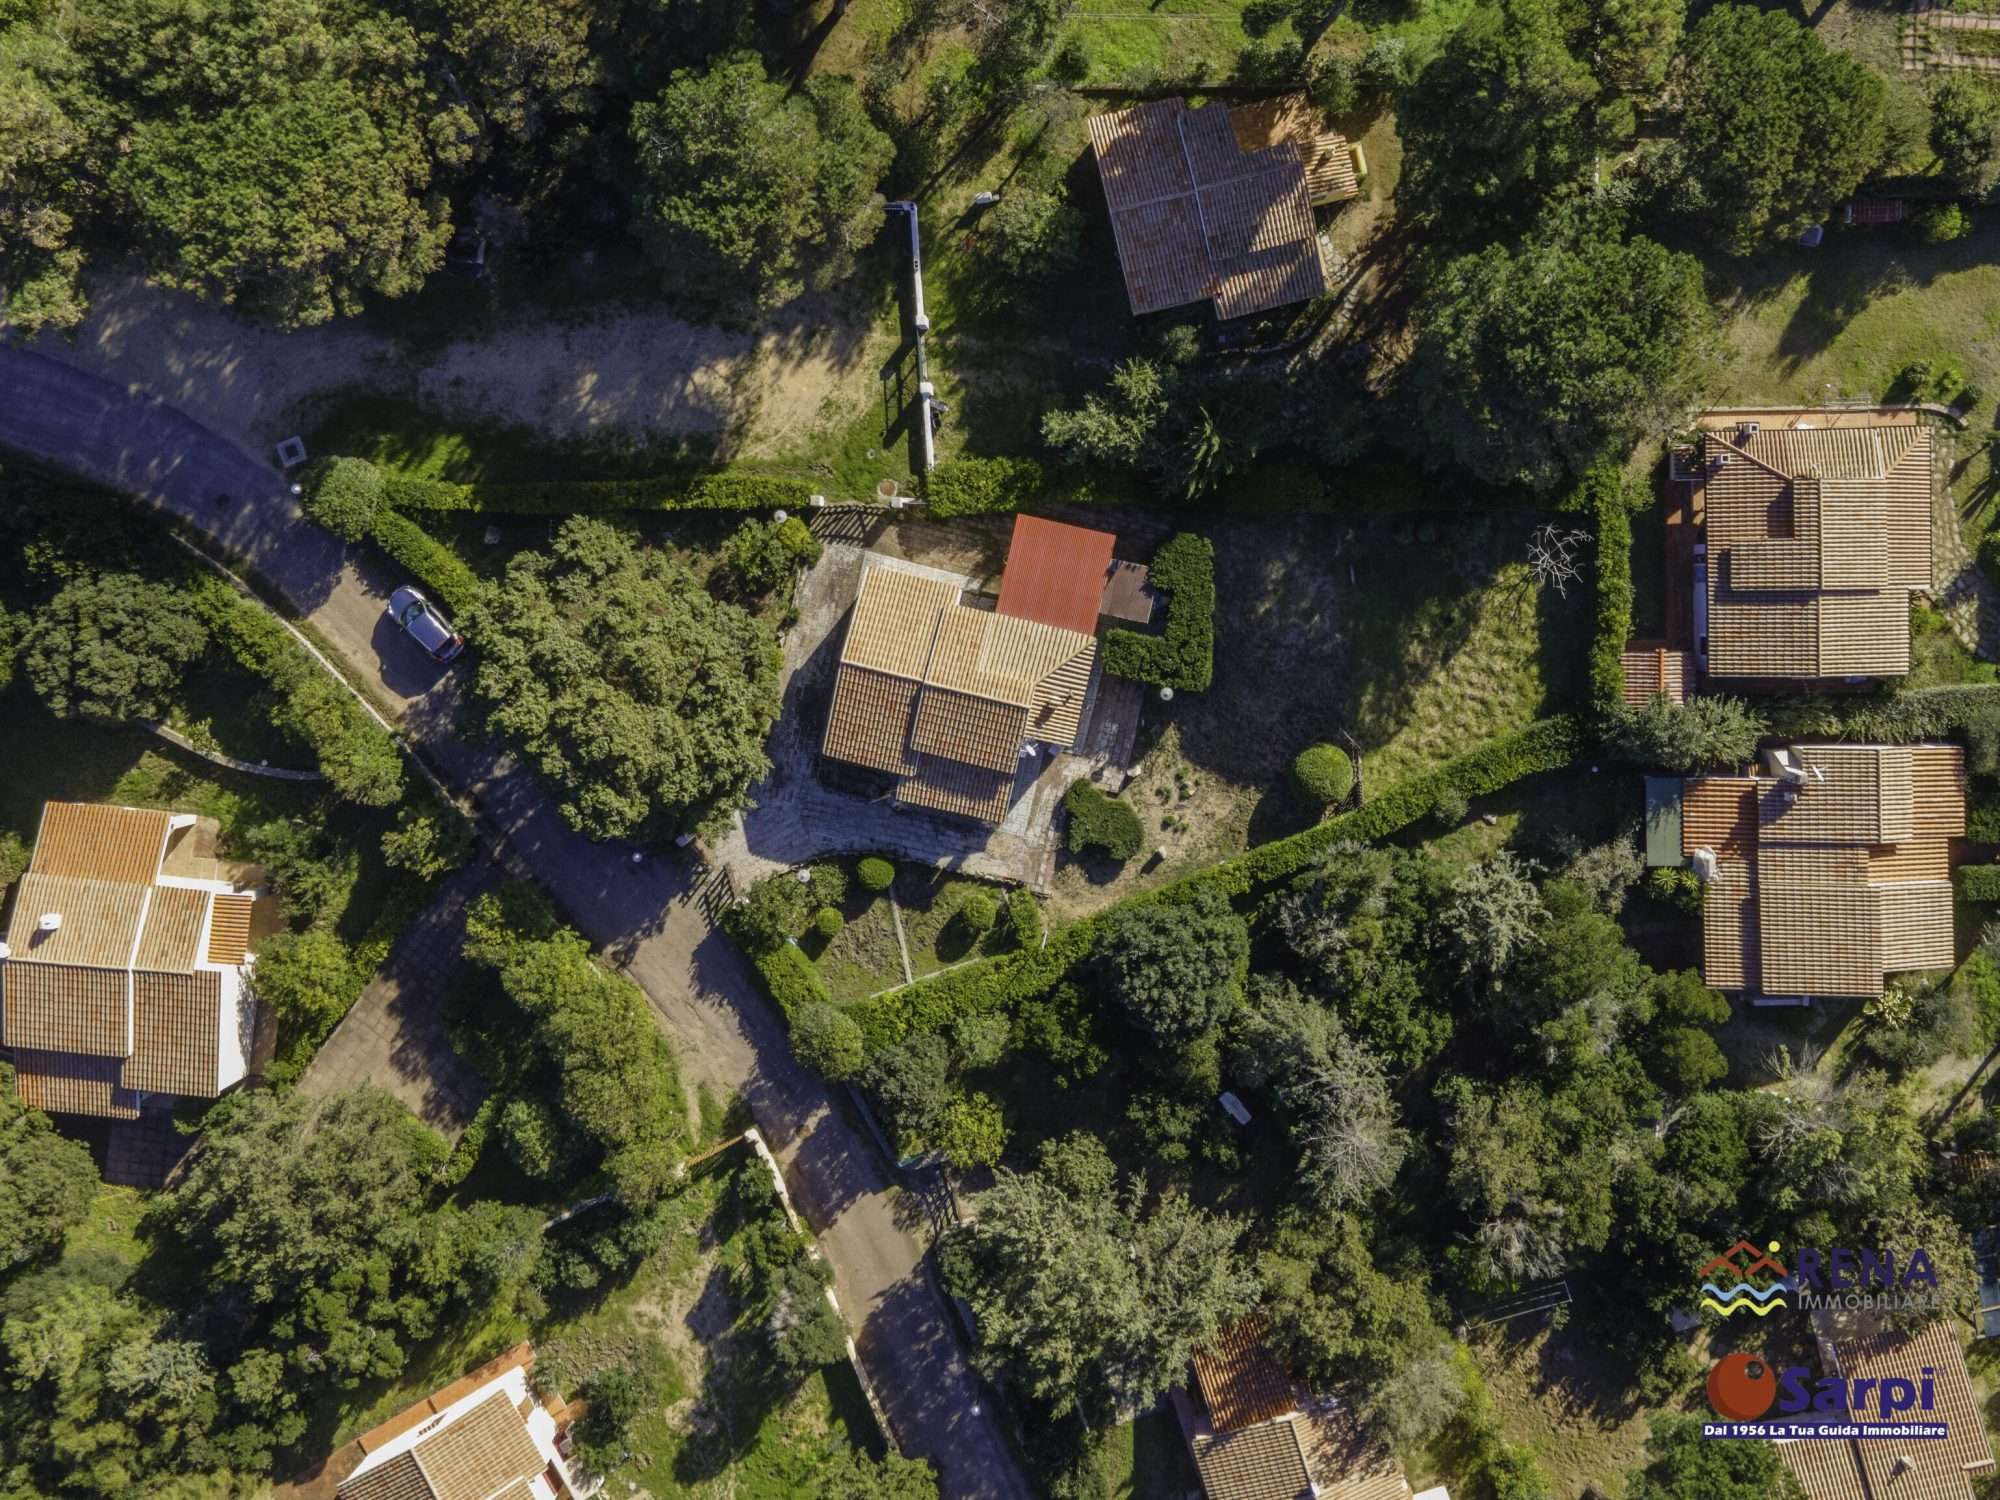 Villetta indipendente con giardino privato – Rena Majore